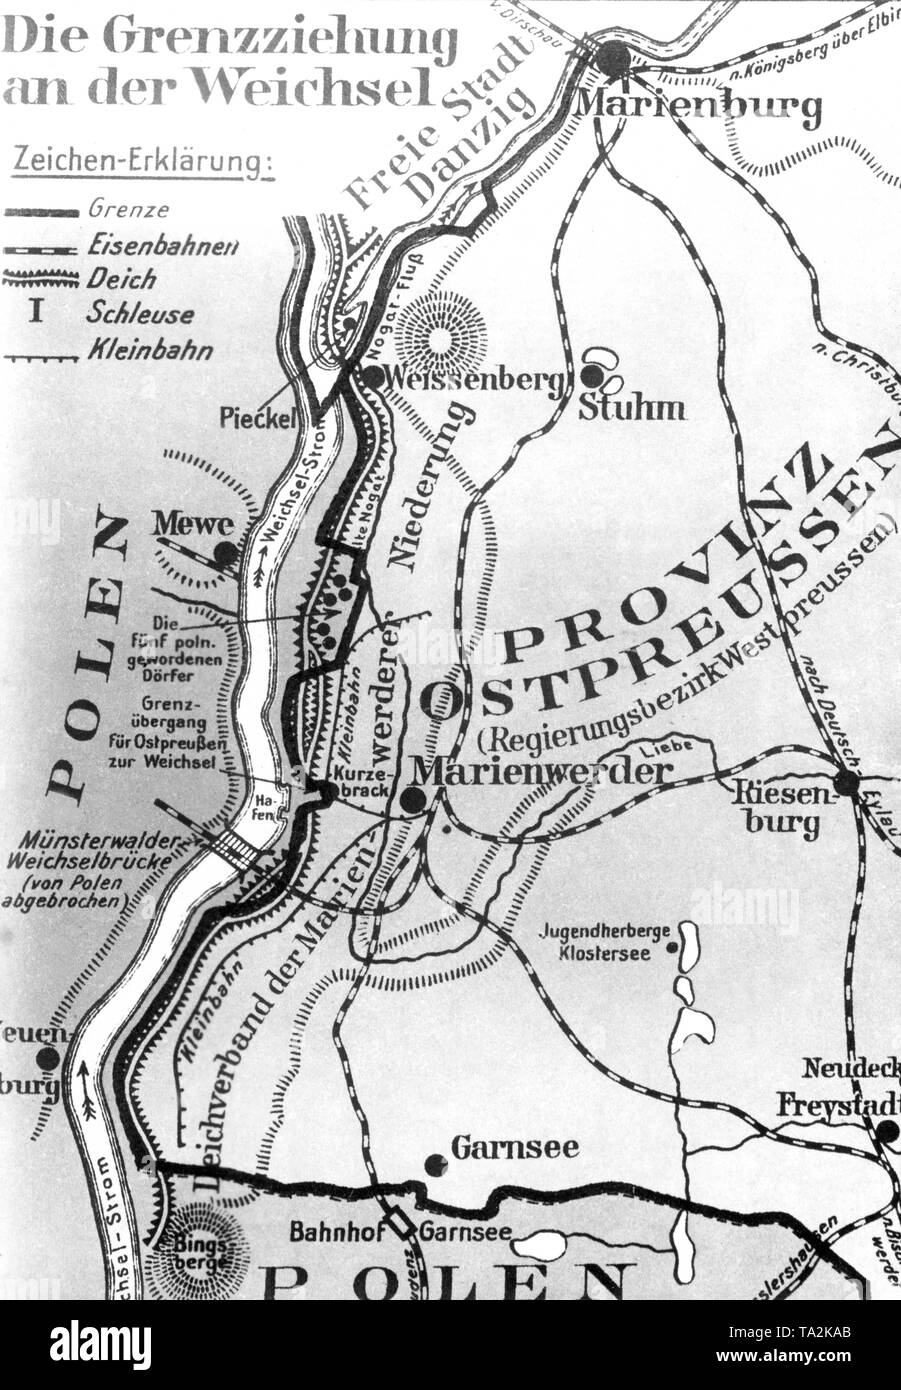 El mapa muestra el área de ??la 'Dreilaendereck' (trijunction) entre Polonia, Alemania y cerca de Gdansk Weissenberg, así como de la vecina aldea de la ciudad fronteriza de Marienwerder. Foto de stock